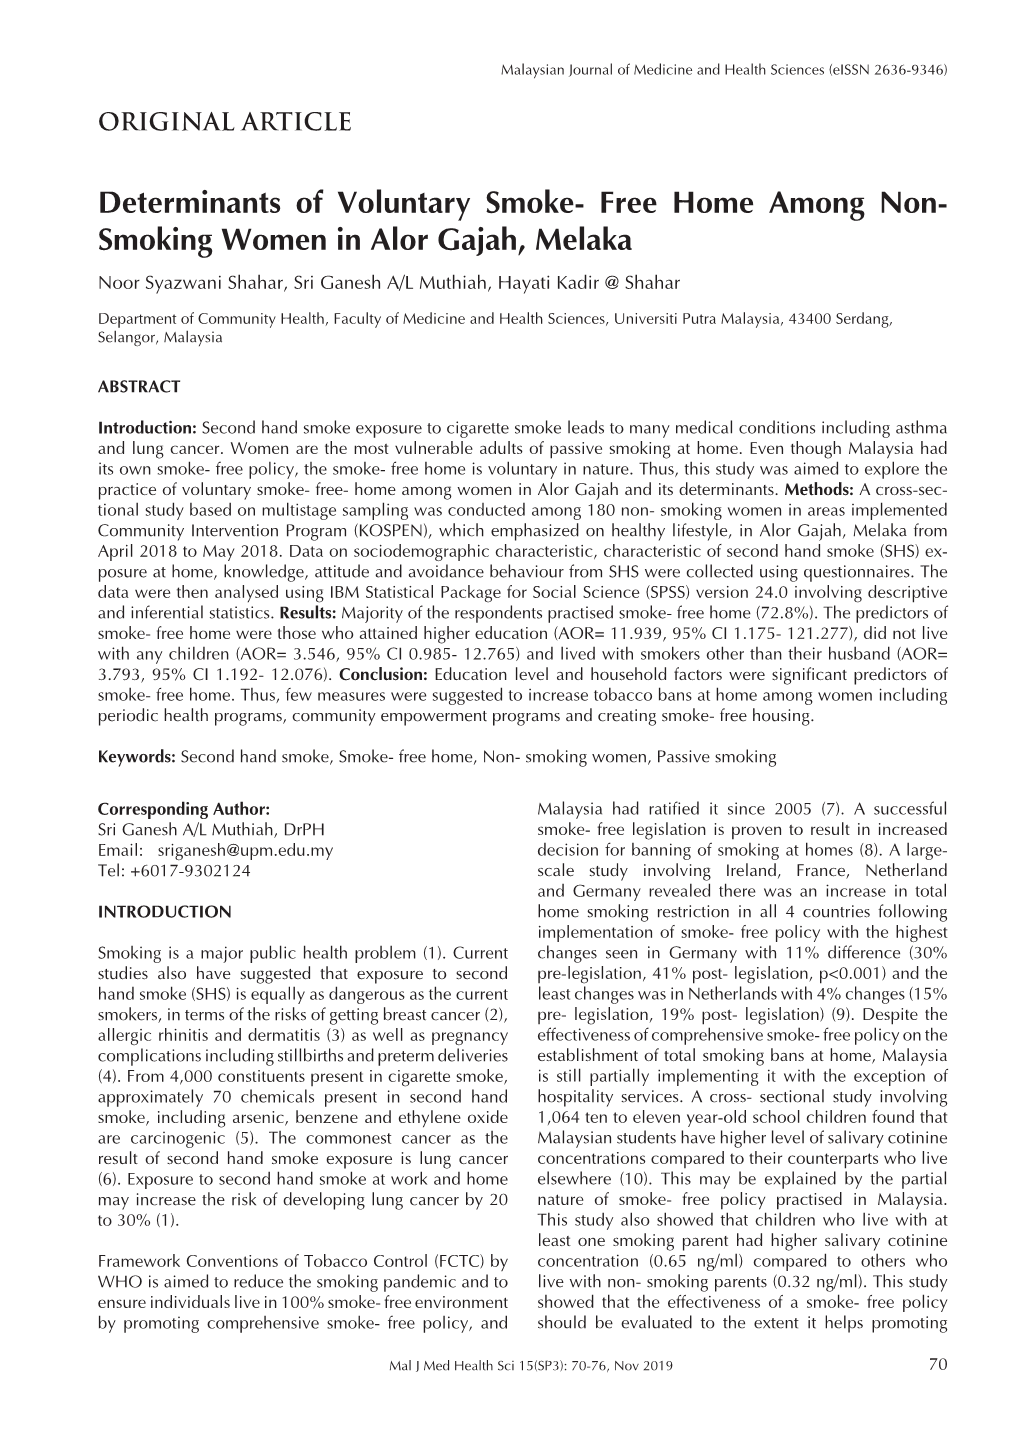 Smoking Women in Alor Gajah, Melaka Noor Syazwani Shahar, Sri Ganesh A/L Muthiah, Hayati Kadir @ Shahar